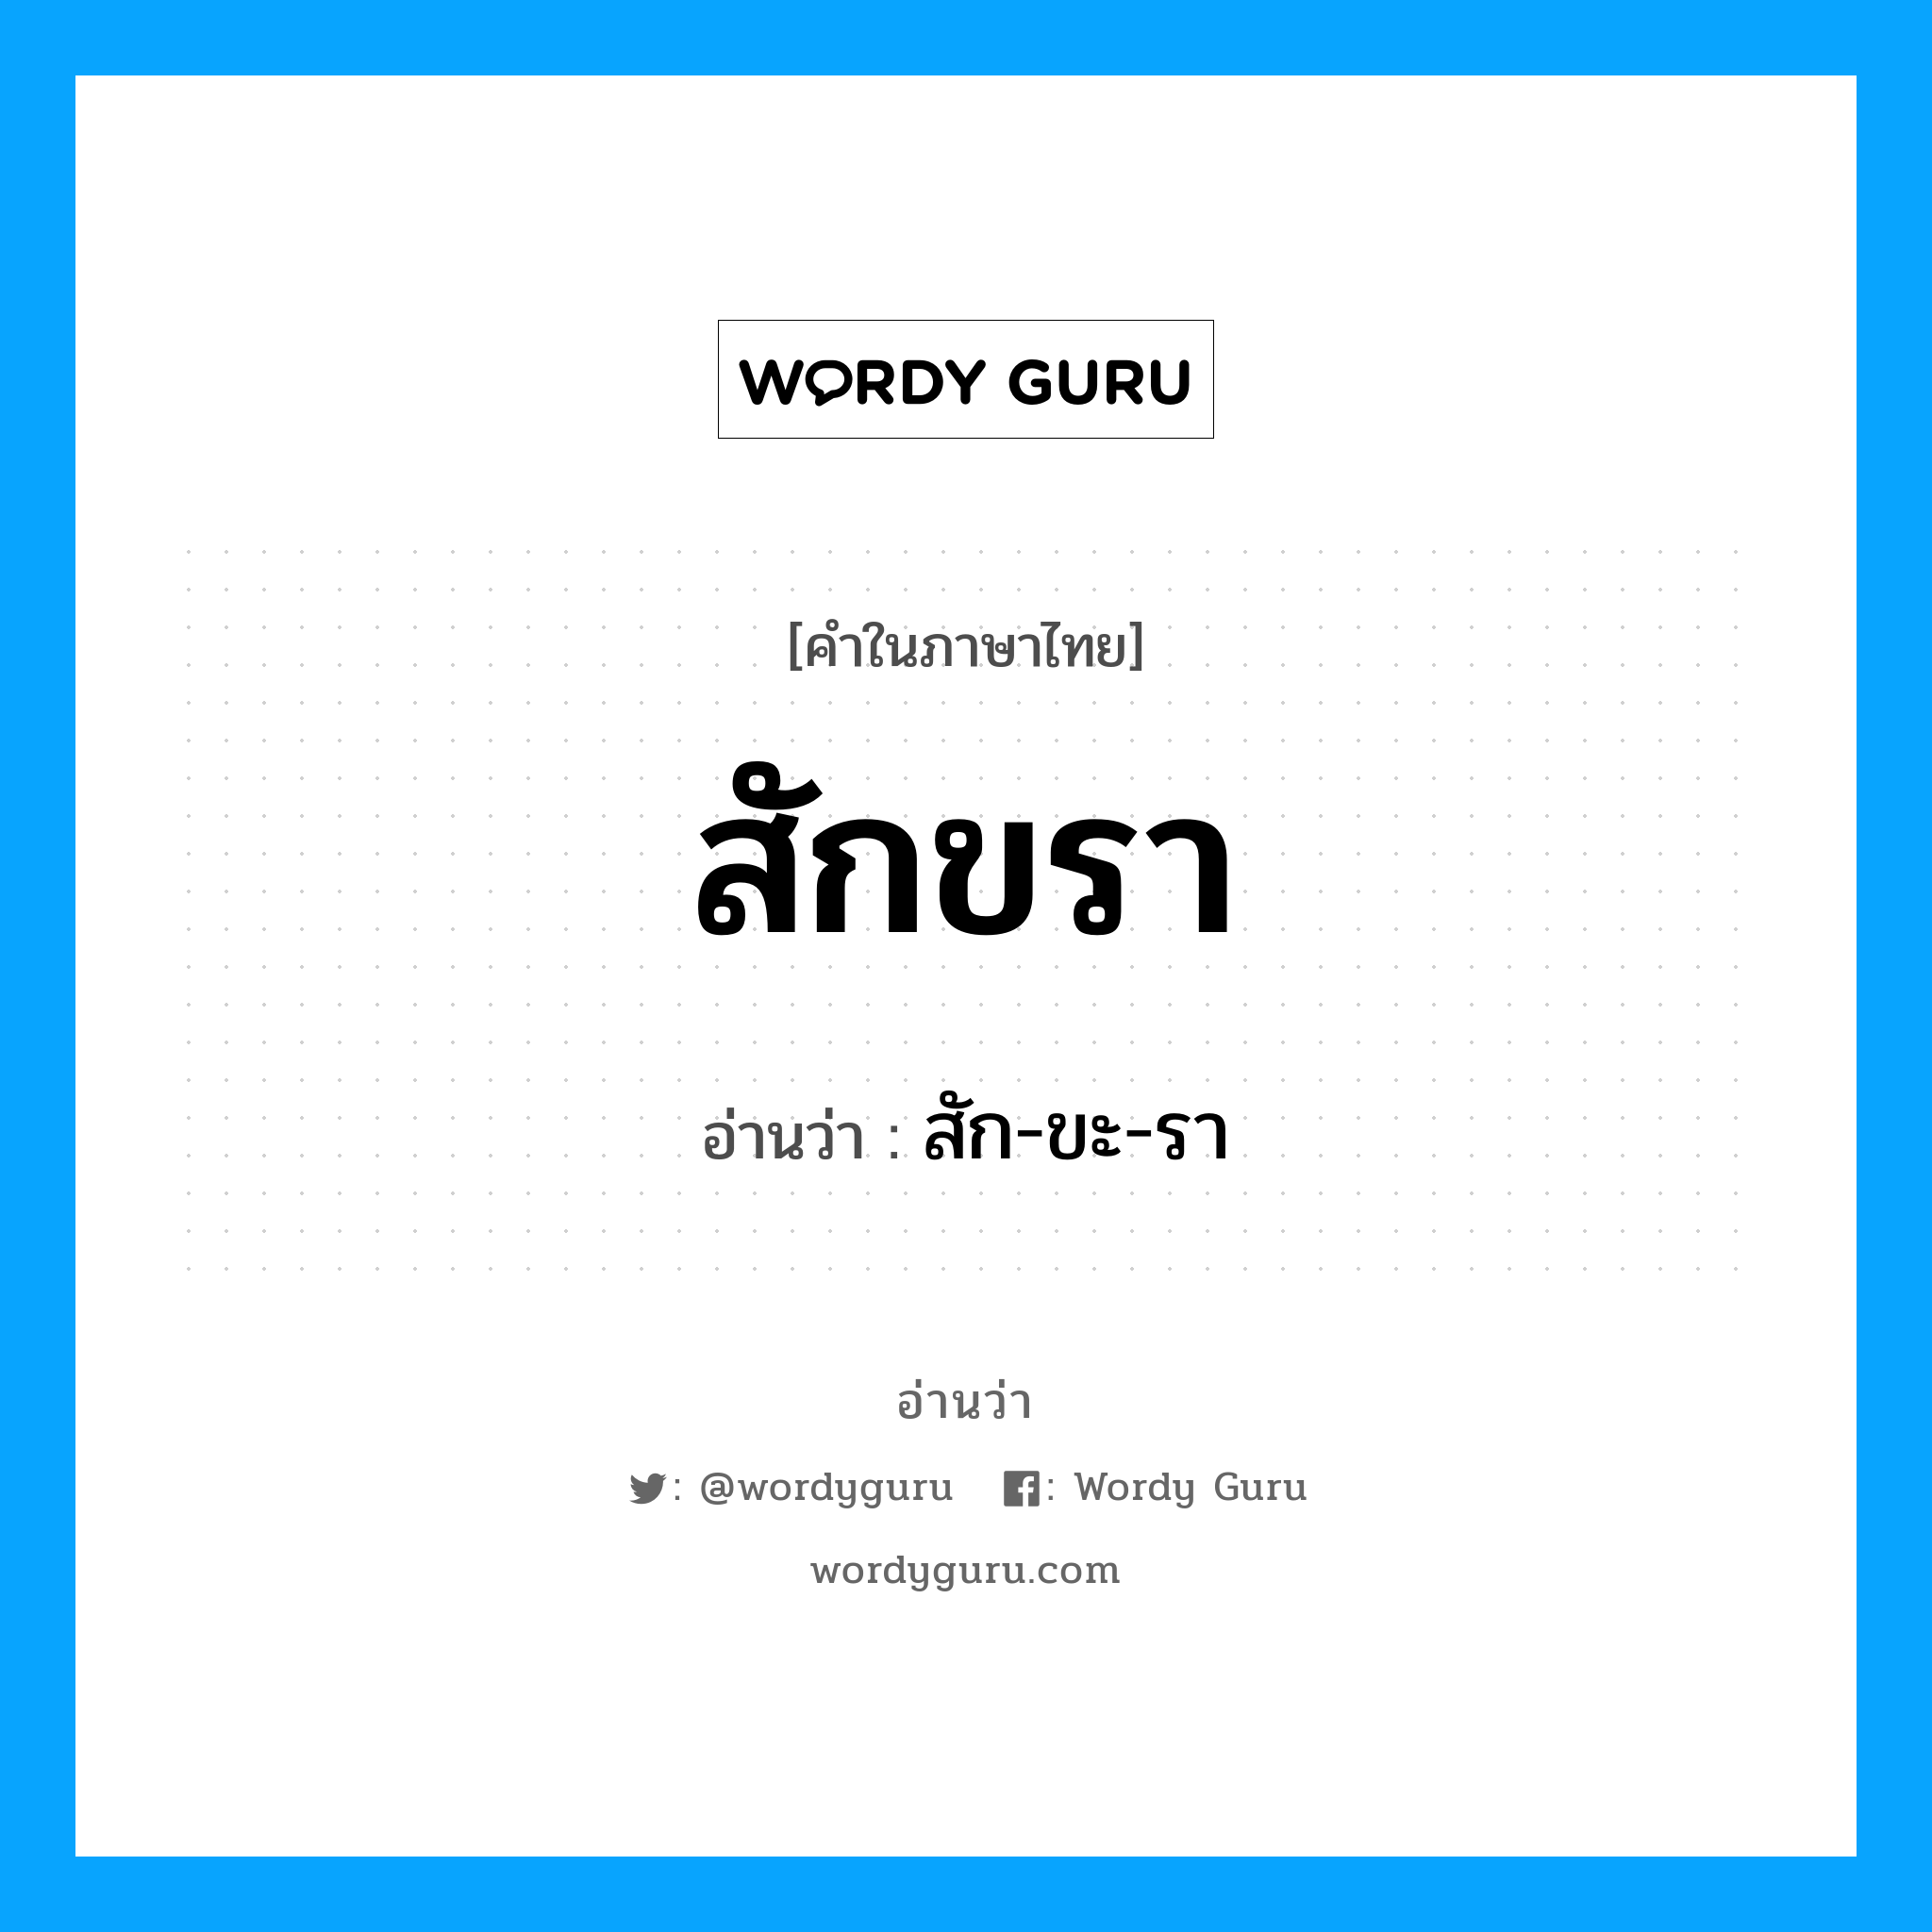 สัก-ขะ-รา เป็นคำอ่านของคำไหน?, คำในภาษาไทย สัก-ขะ-รา อ่านว่า สักขรา